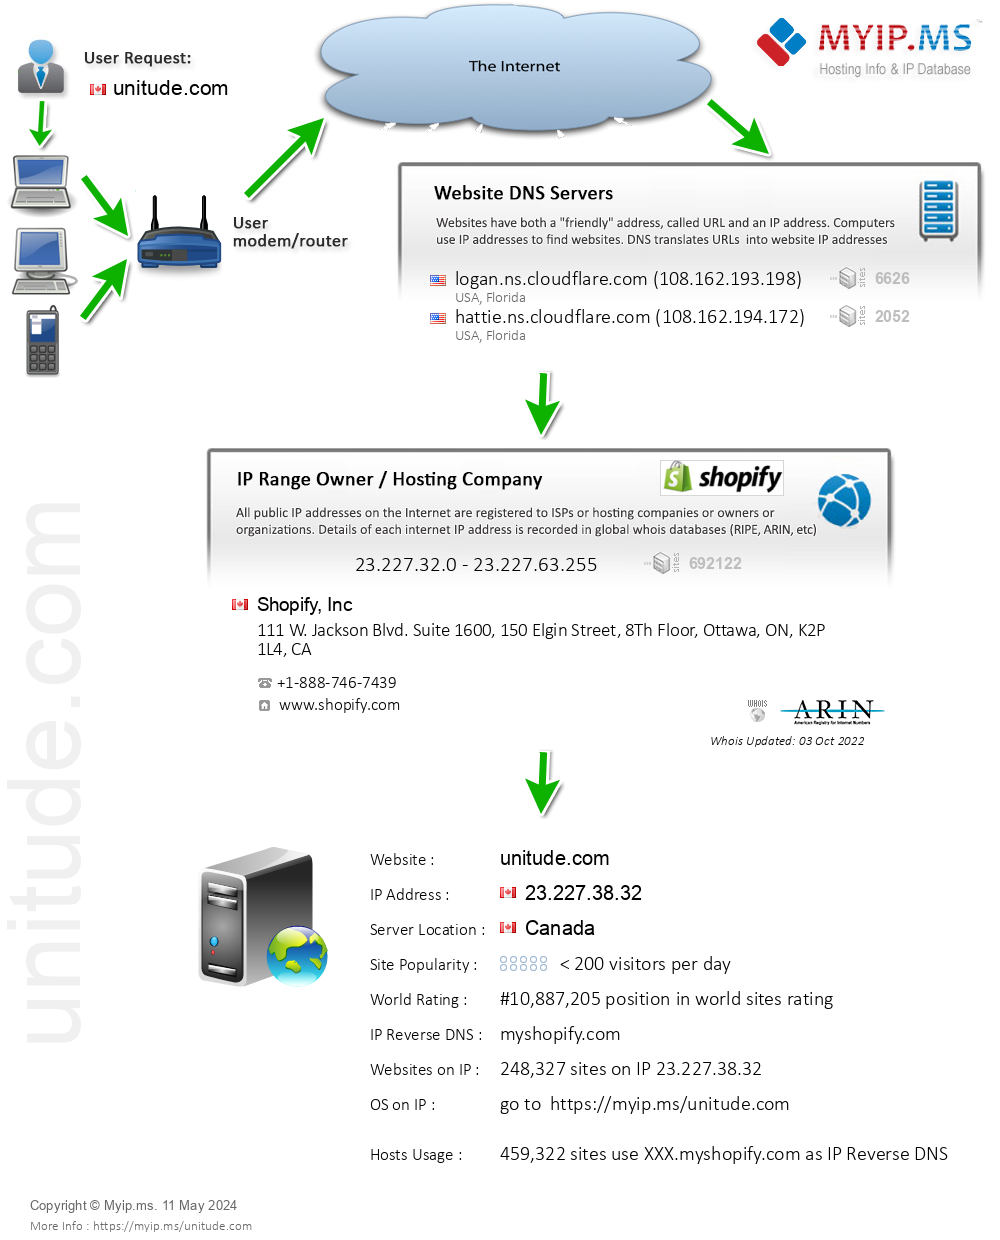 Unitude.com - Website Hosting Visual IP Diagram